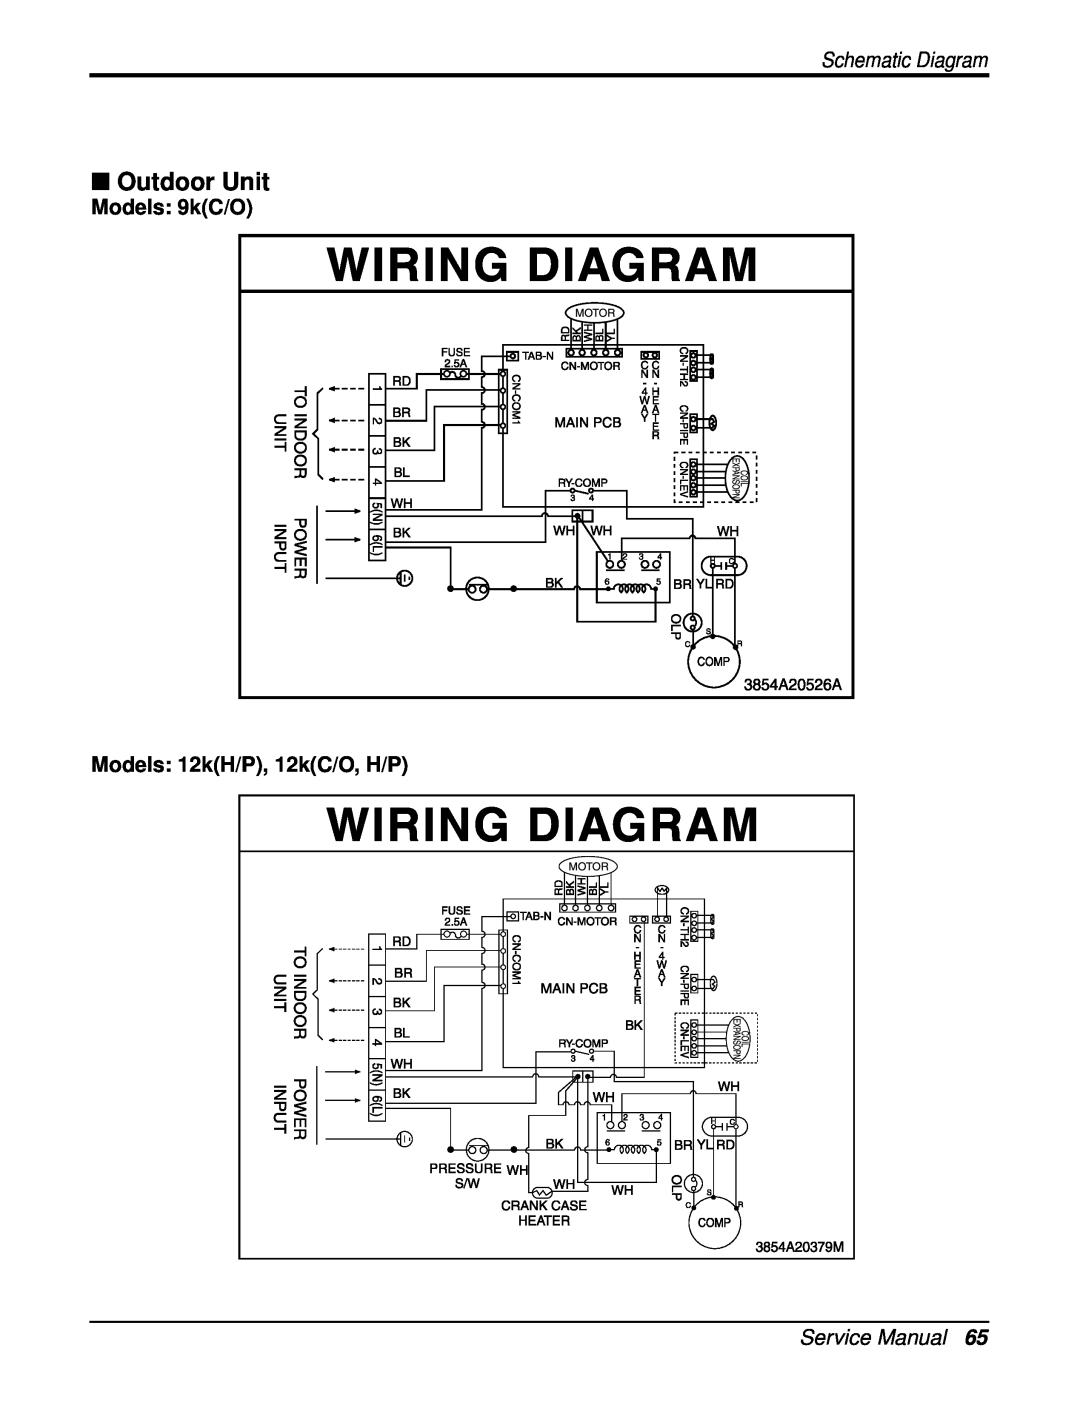 Heat Controller DMC12SB-0, DMC18SB-1, DMC09SB-0 Outdoor Unit, Models 9kC/O, Models 12kH/P, 12kC/O, H/P, Schematic Diagram 